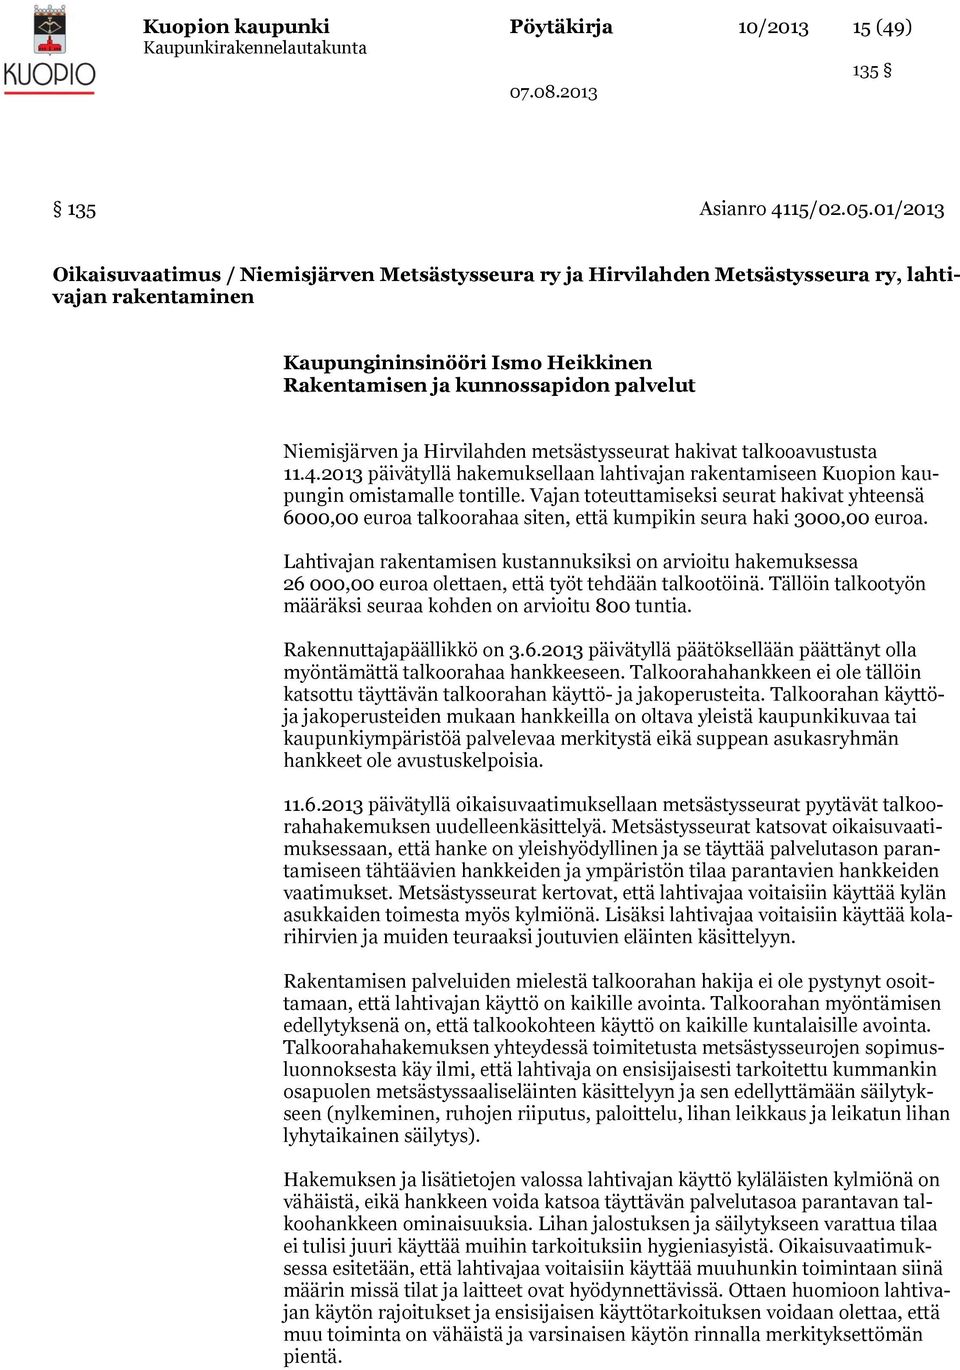 Niemisjärven ja Hirvilahden metsästysseurat hakivat talkooavustusta 11.4.2013 päivätyllä hakemuksellaan lahtivajan rakentamiseen Kuopion kaupungin omistamalle tontille.